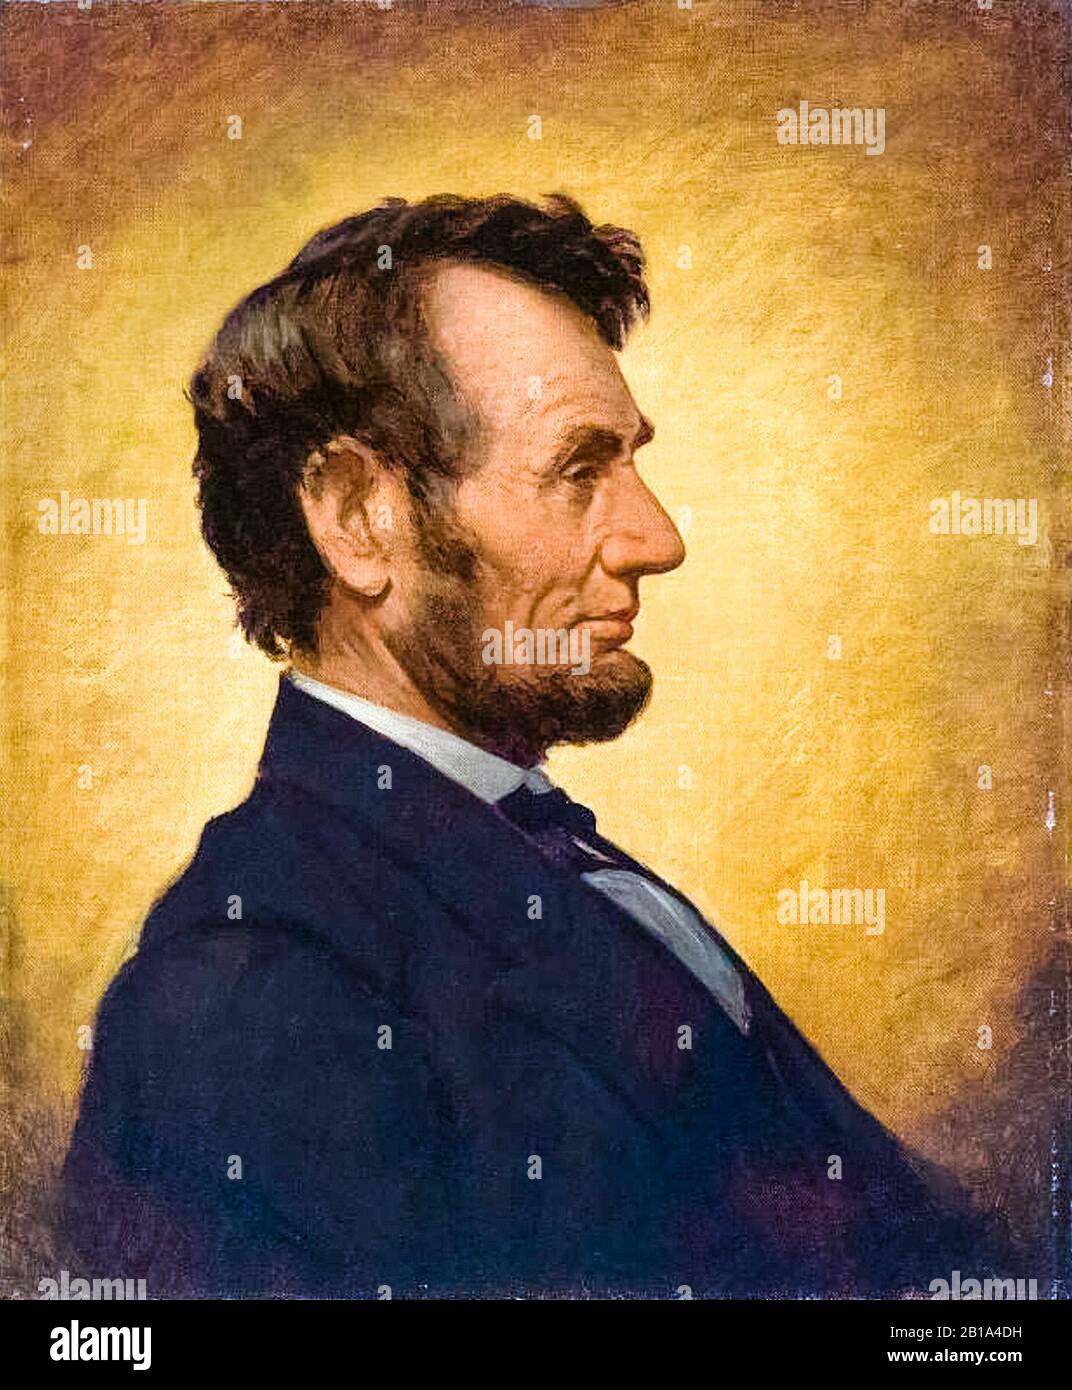 The Penny image of Abraham Lincoln (1809-1865), portrait peint en profil par William Willard, 1864 Banque D'Images